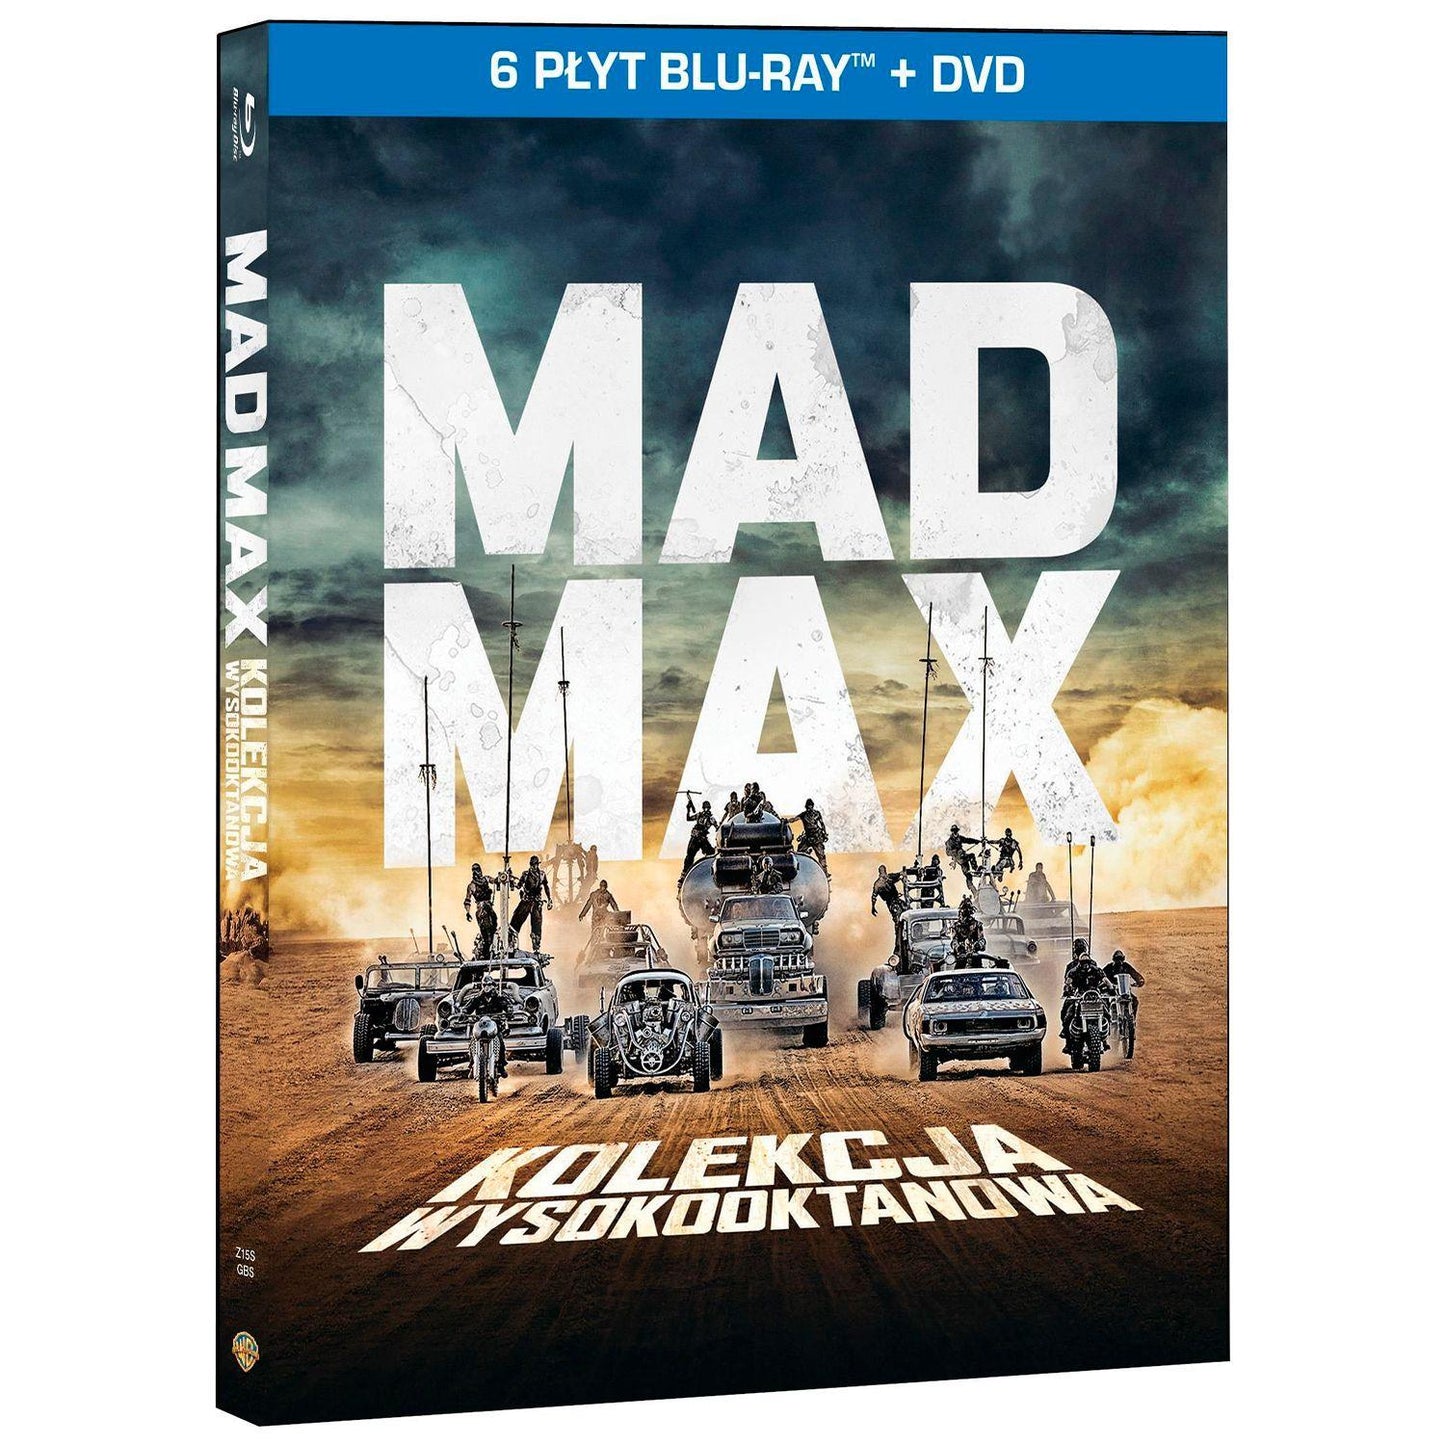 Безумный Макс [High-Octane Collection] (6 Blu-ray + DVD)